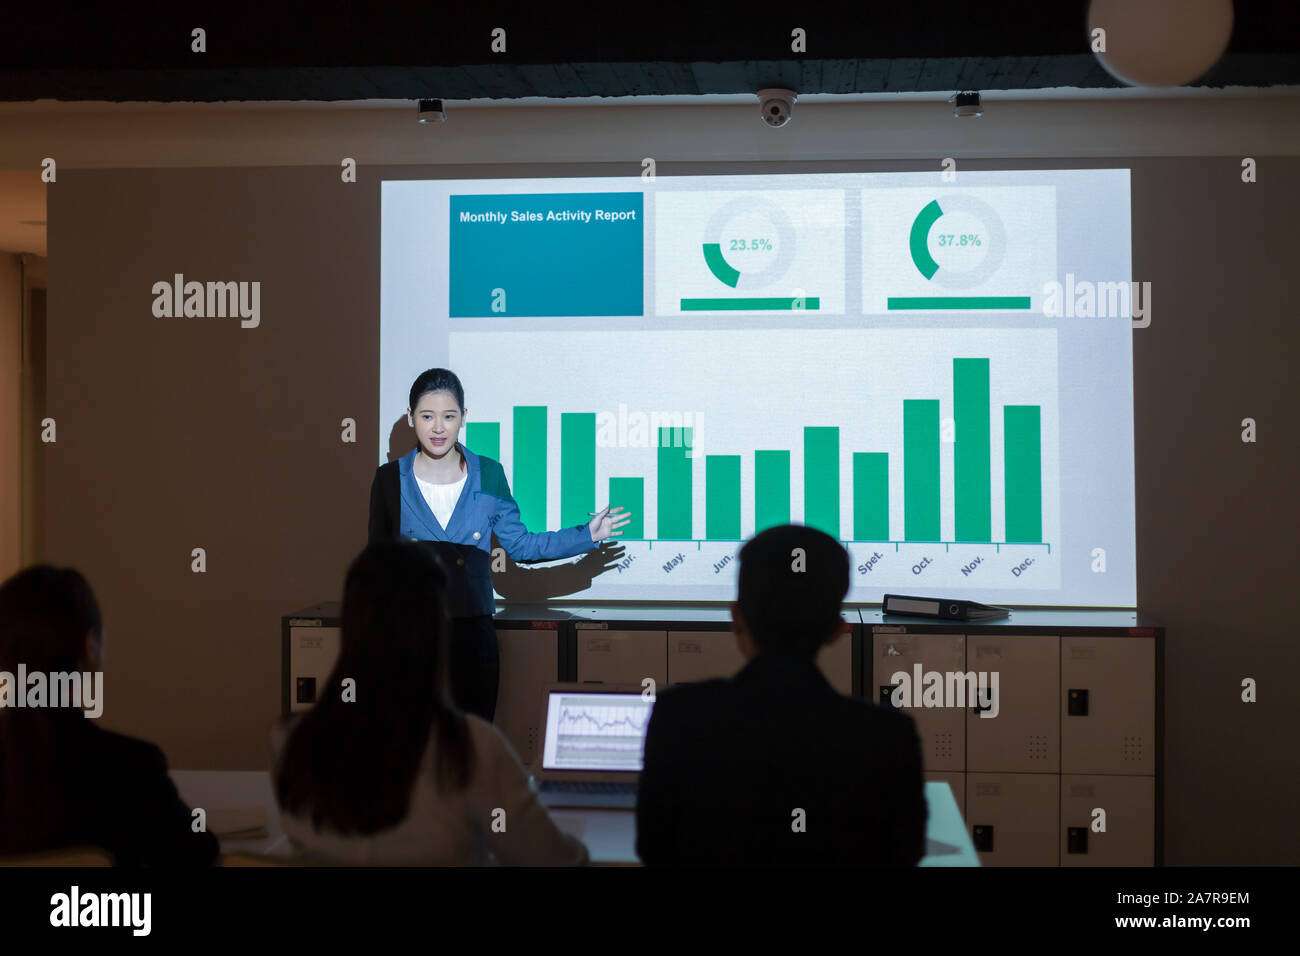 Fotografía de una joven empresaria en businesswear dando una presentación con un gráfico en la pantalla detrás de ella Foto de stock